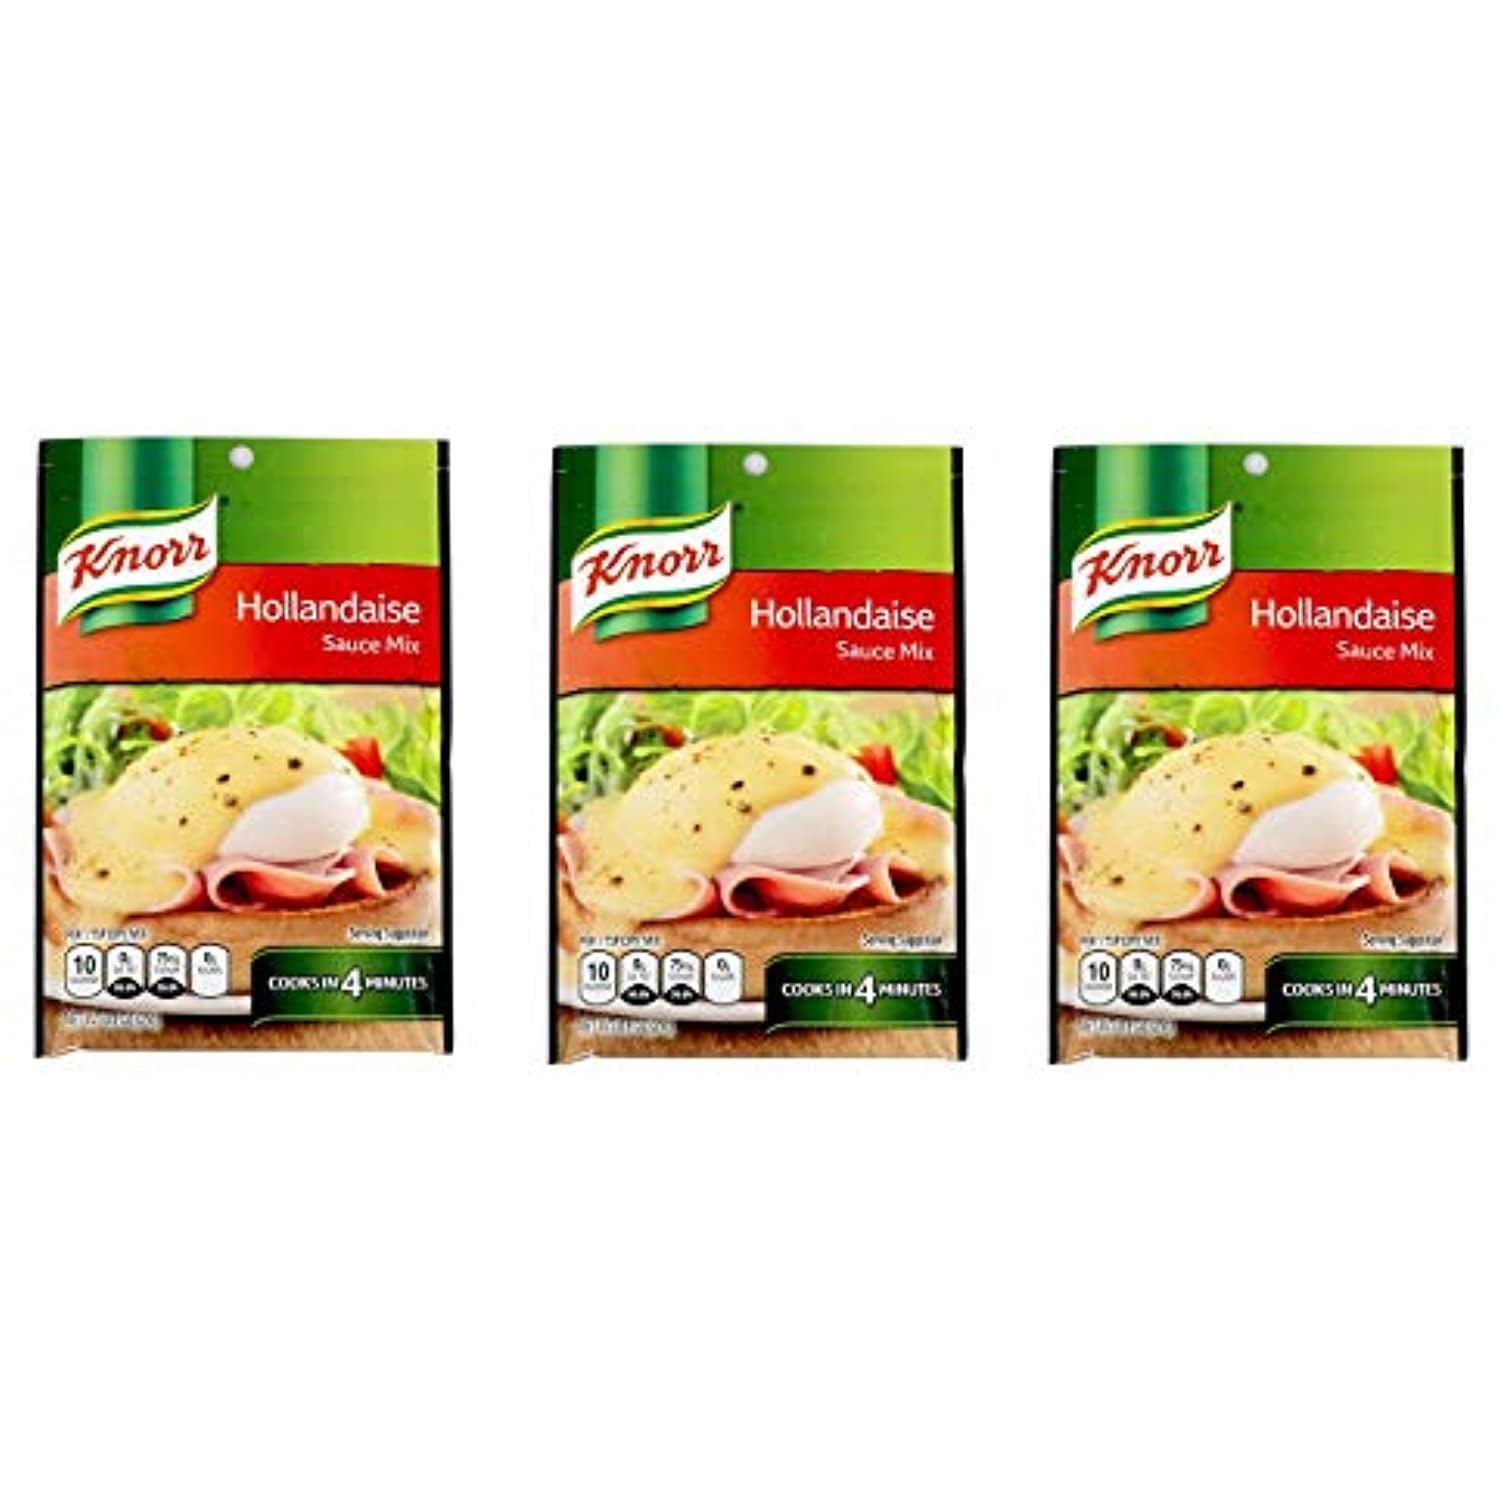 Knorr Hollandaise Sauce Mix - 0.9Oz 3 Units] - Walmart.com